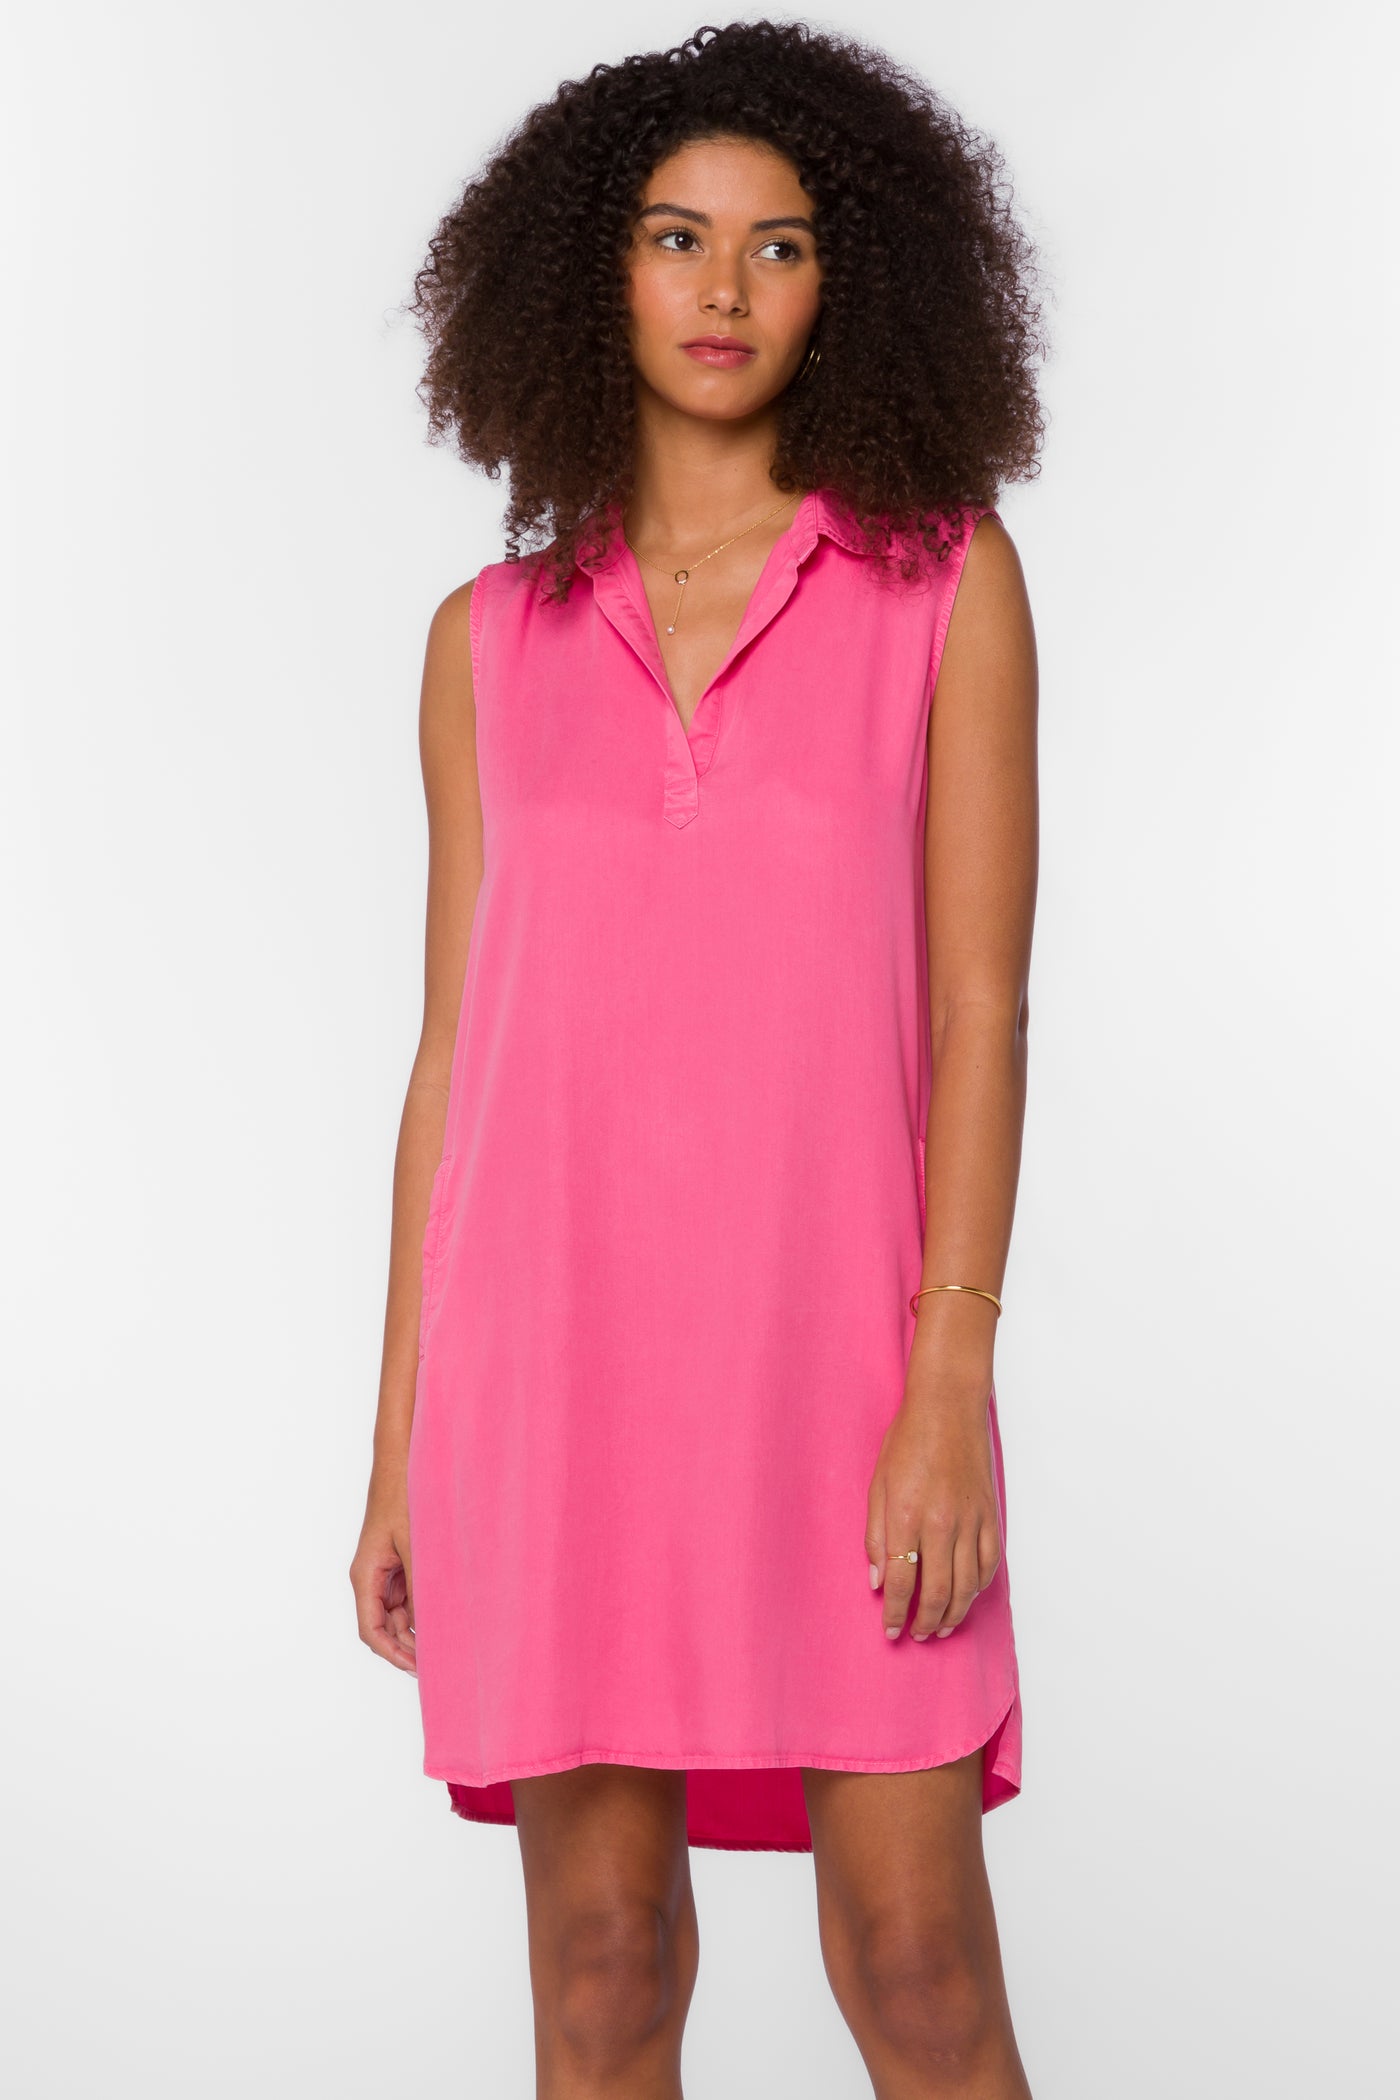 Delaney Hot Pink Dress - Dresses - Velvet Heart Clothing